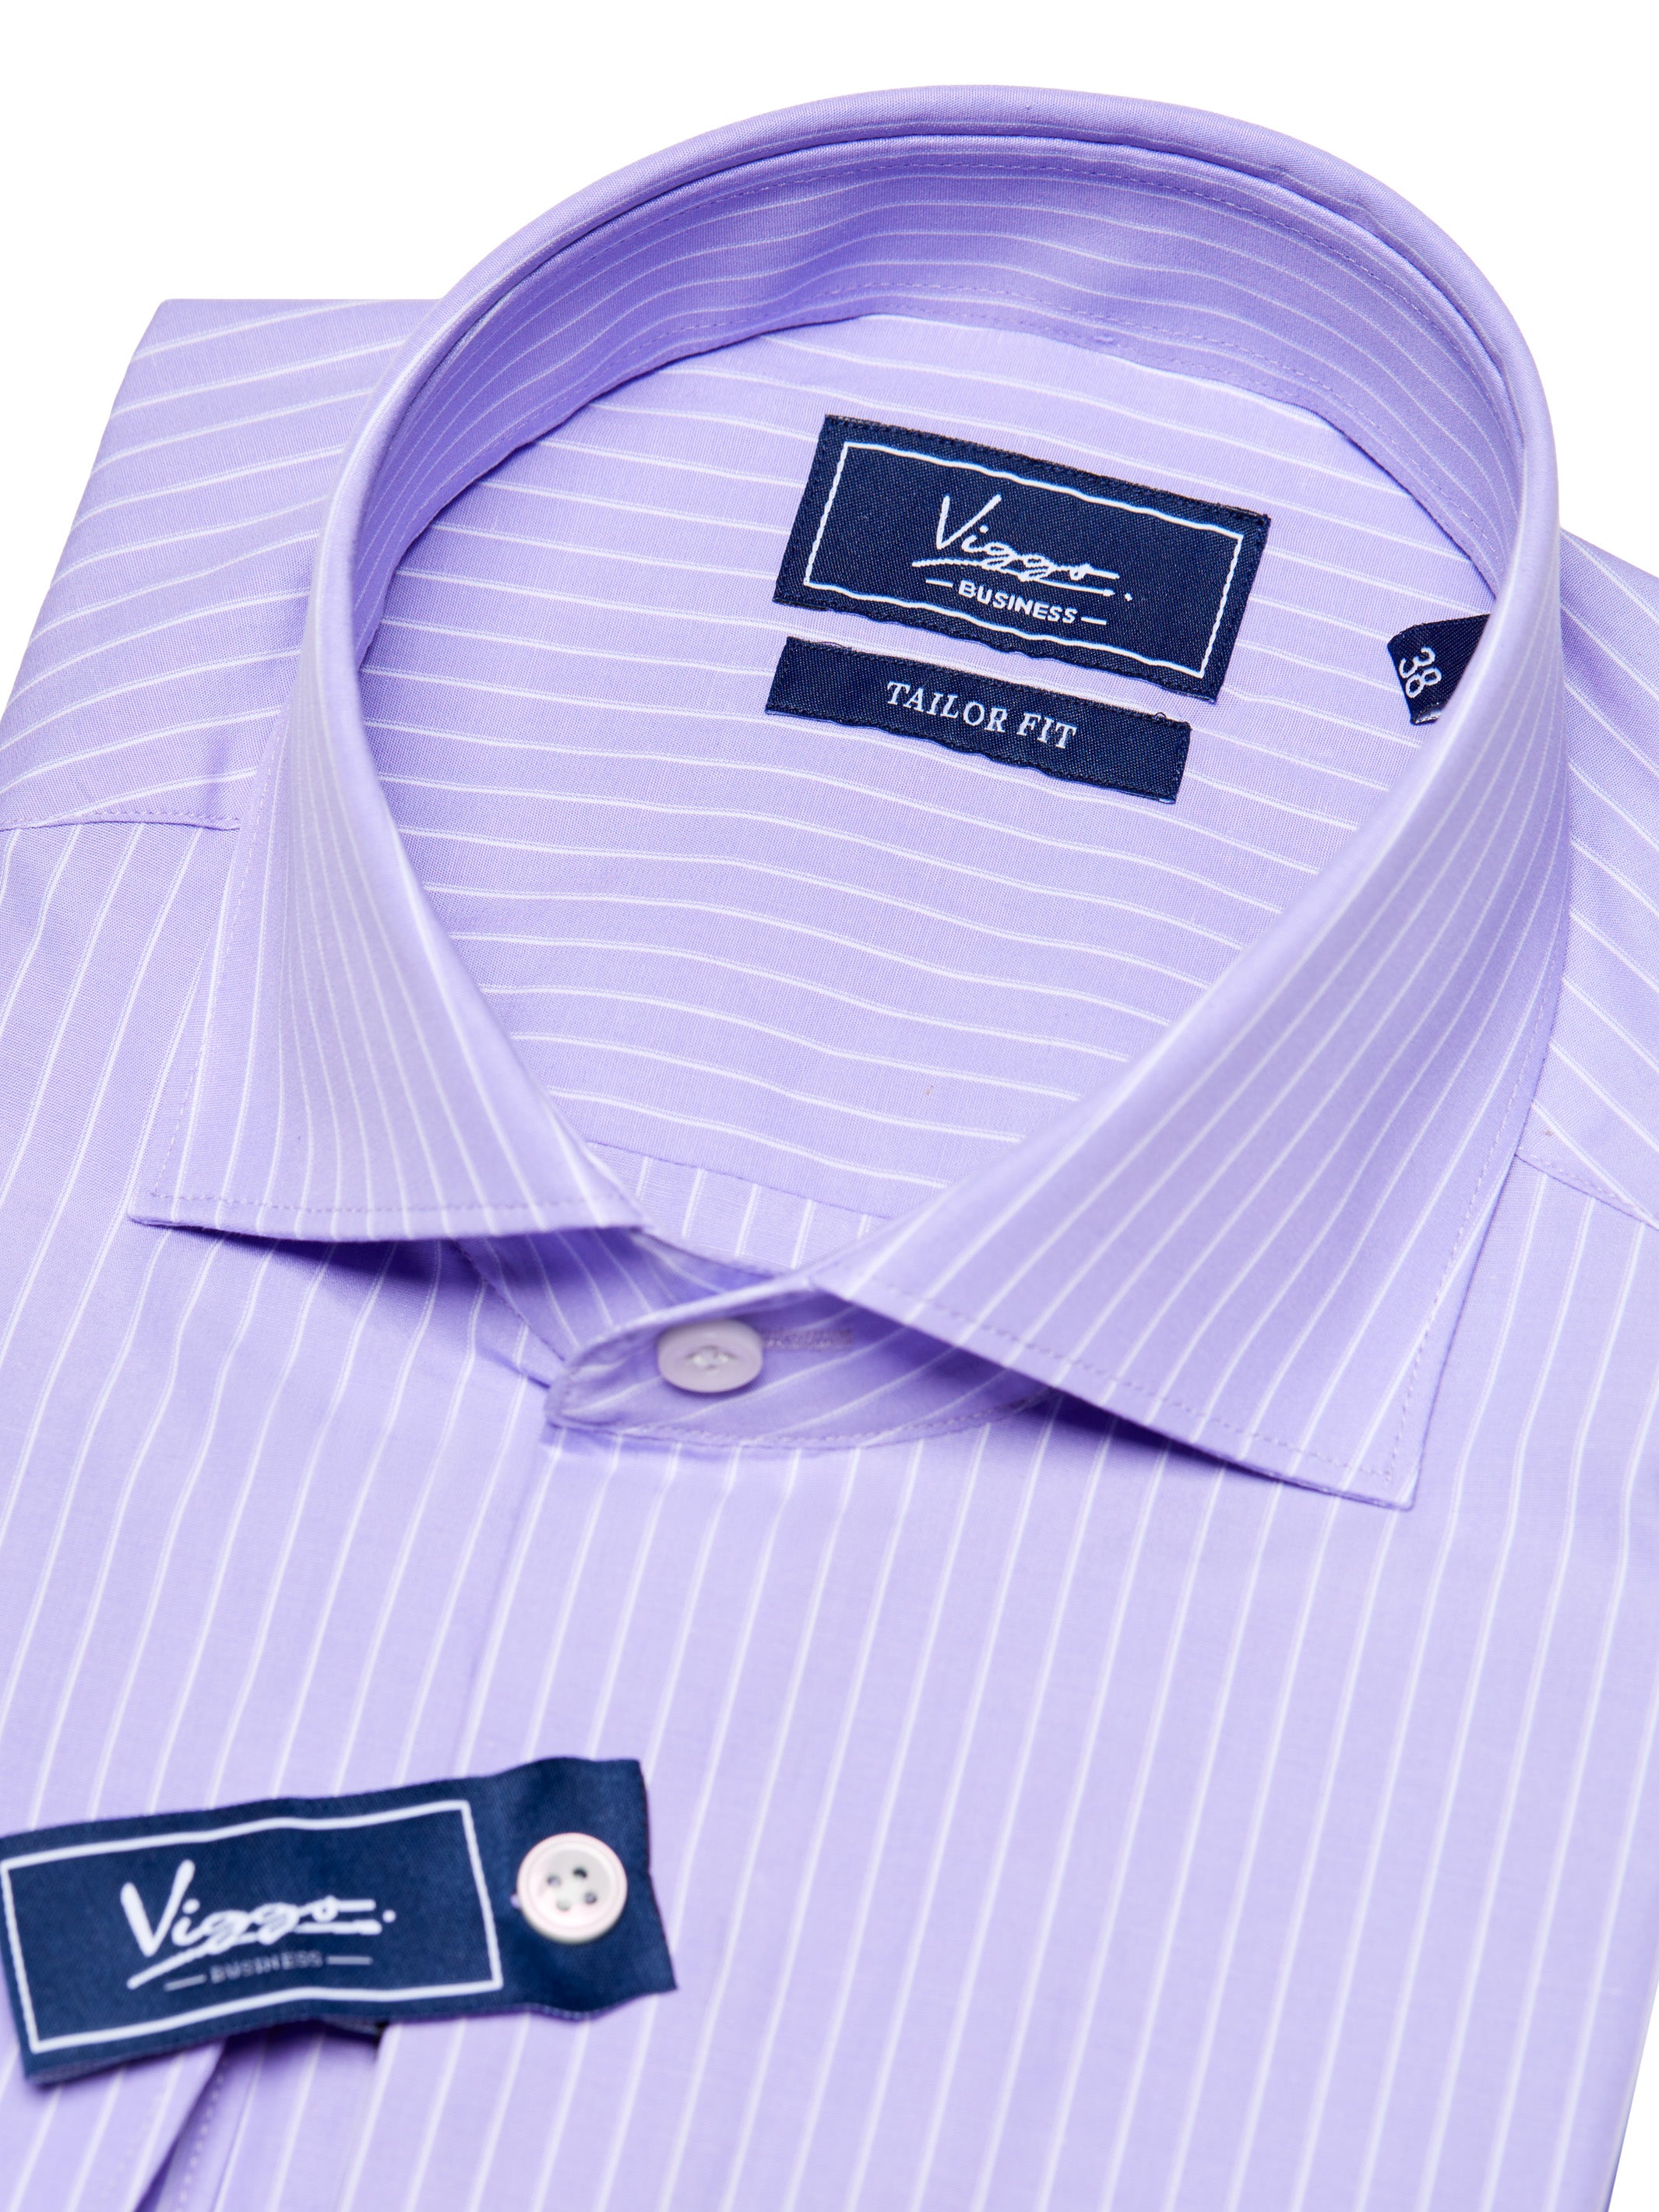 白のストライプが入った薄紫色のシャツ